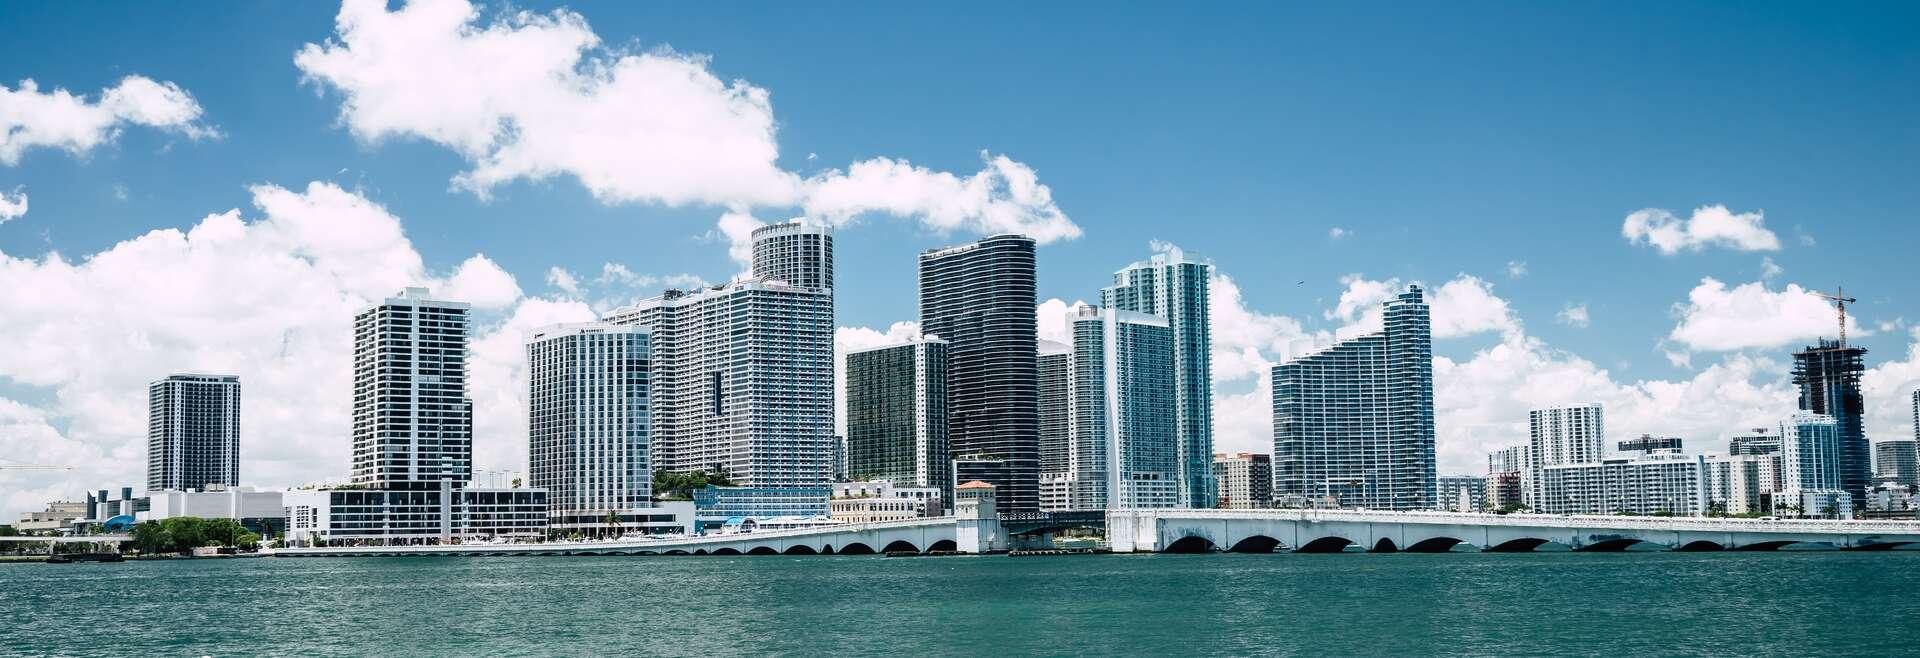 Séjour linguistique États-Unis, Miami - At The Teachers Home HLI Miami - Skyline